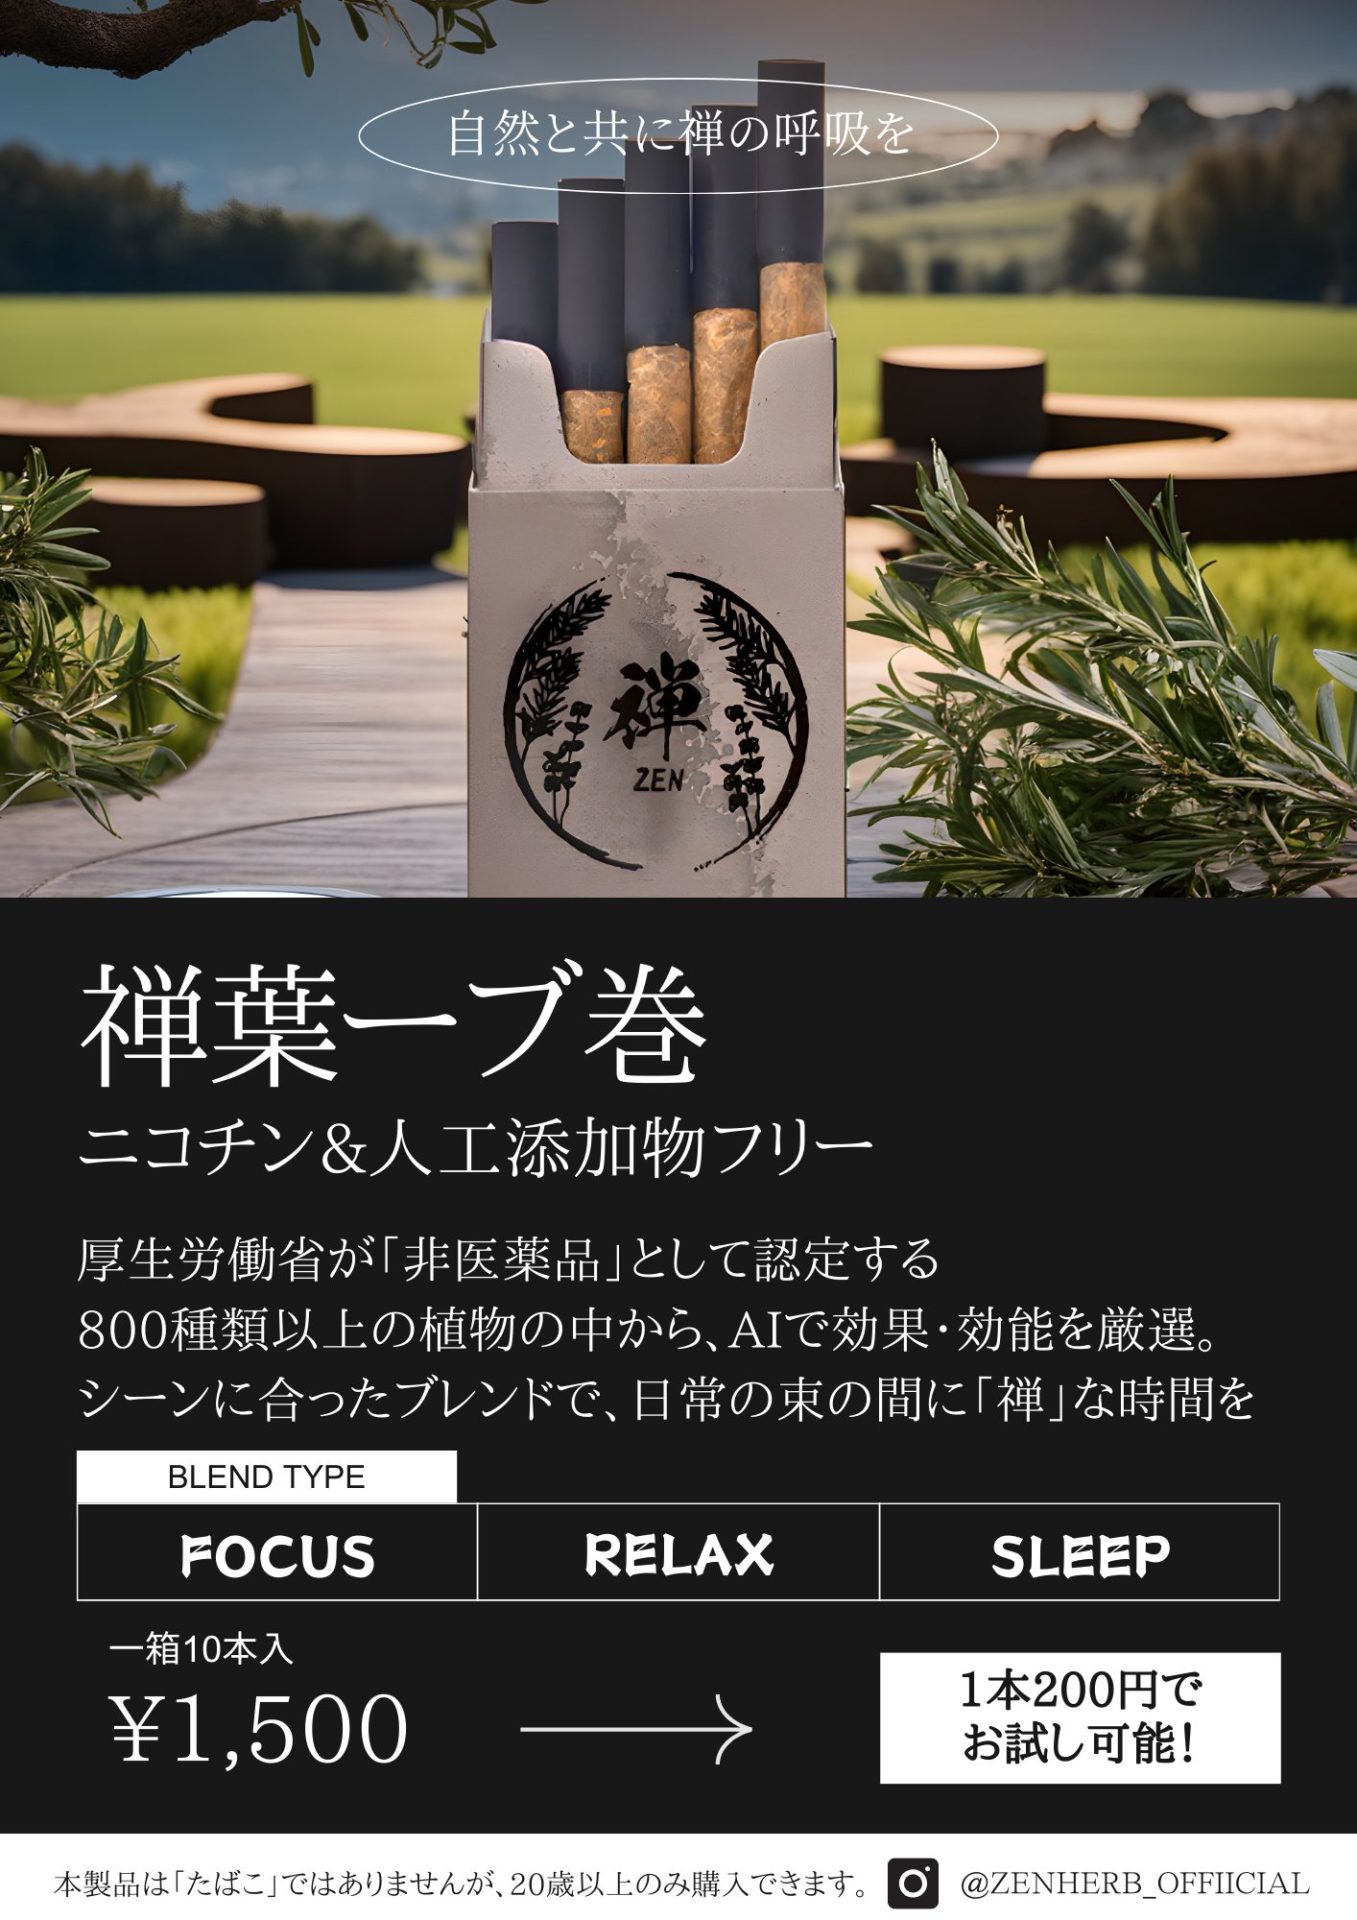 【平塚市】吸うハーブ巻「禅ハーブ」、初のコラボブレンドとなる「吸うビール」をリリース